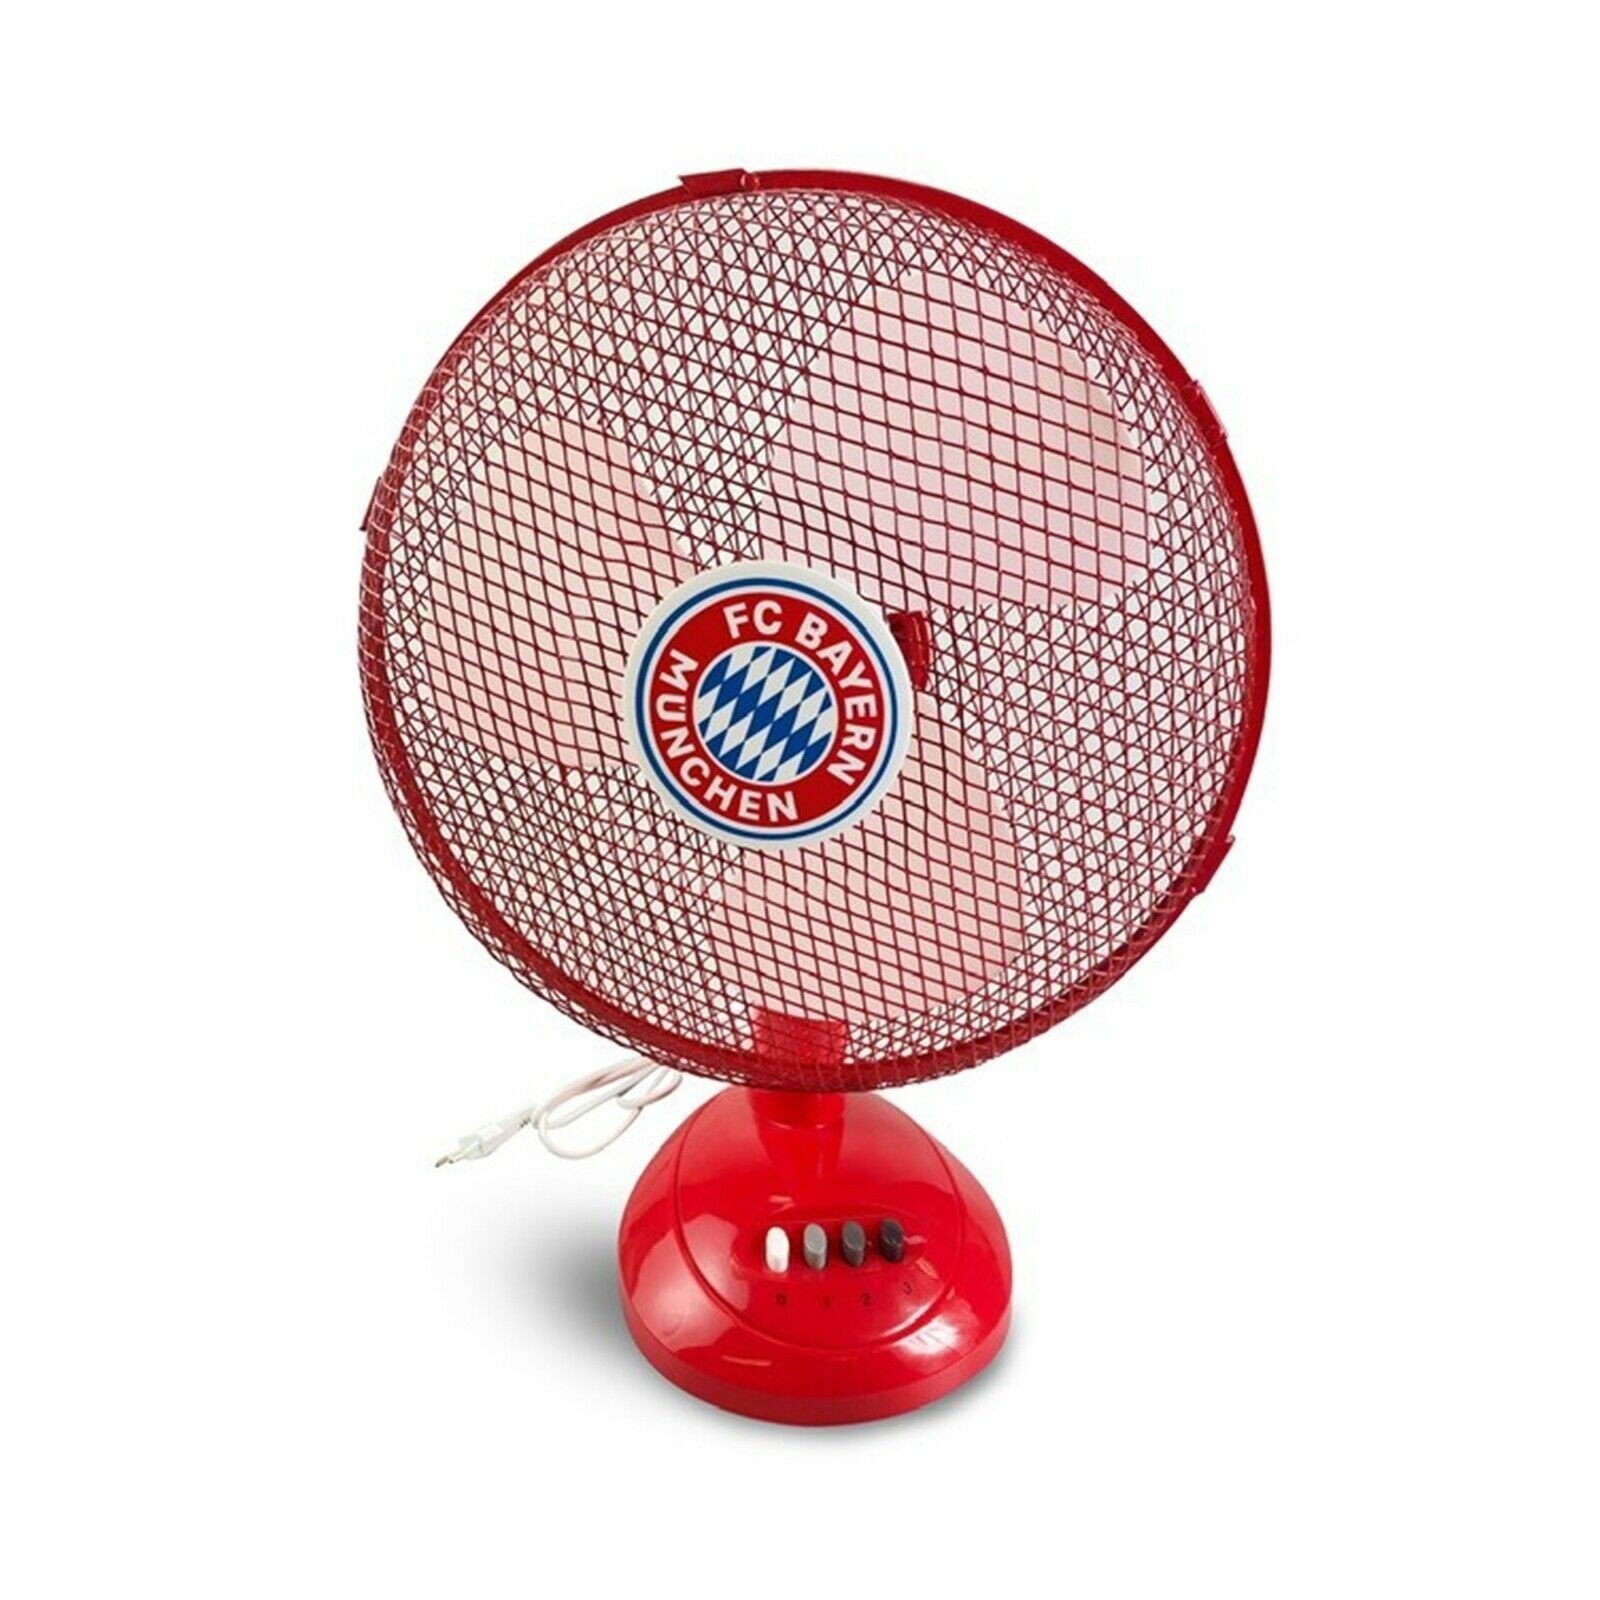 ECG Tischventilator FT30A FCB, 30,00 cm Durchmesser, einzigartiges FC Bayern Design, 3 Geschwindigkeitsstufen | Tischventilatoren